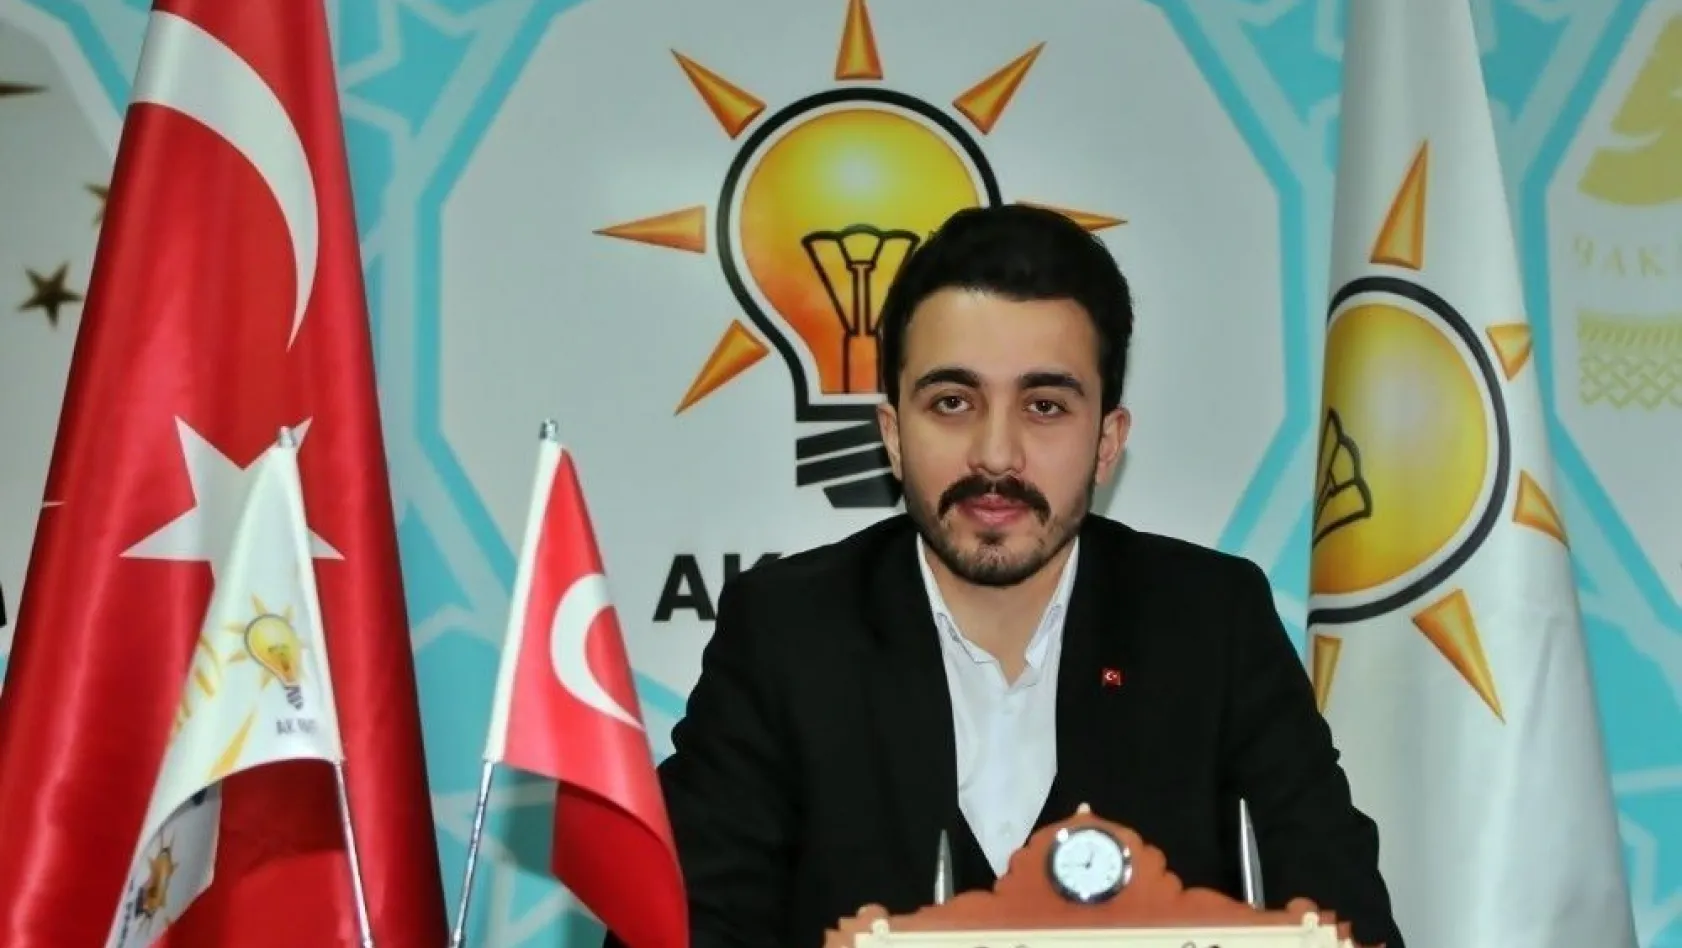 'AK Parti Siyaset ile Gençleşiyor, Türkiye Güçleniyor'
